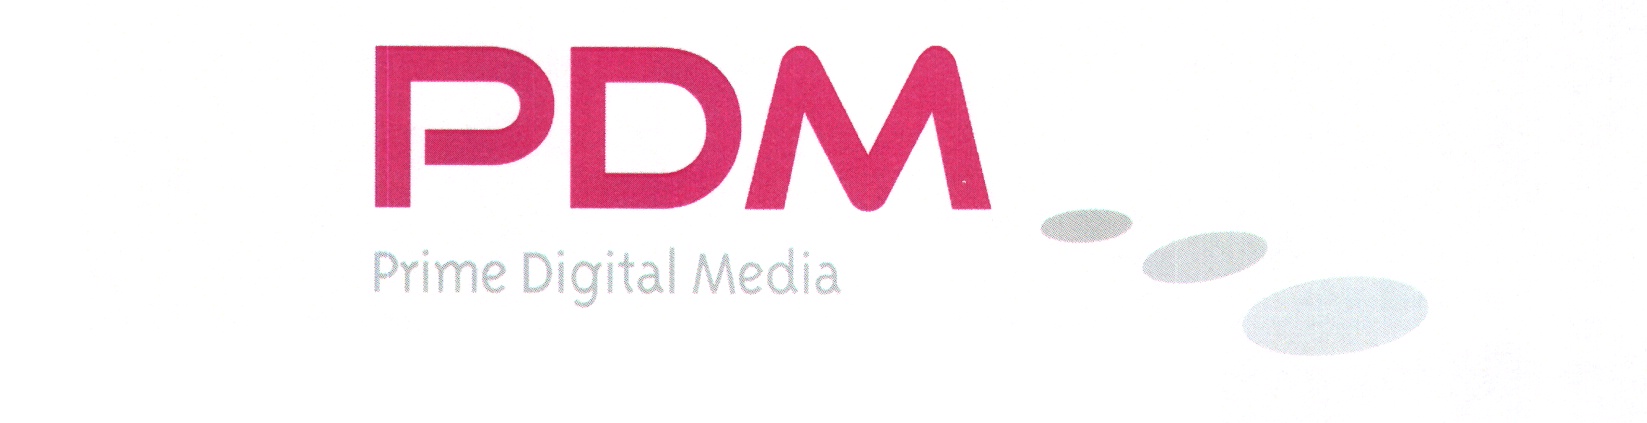 Prime Digital Media